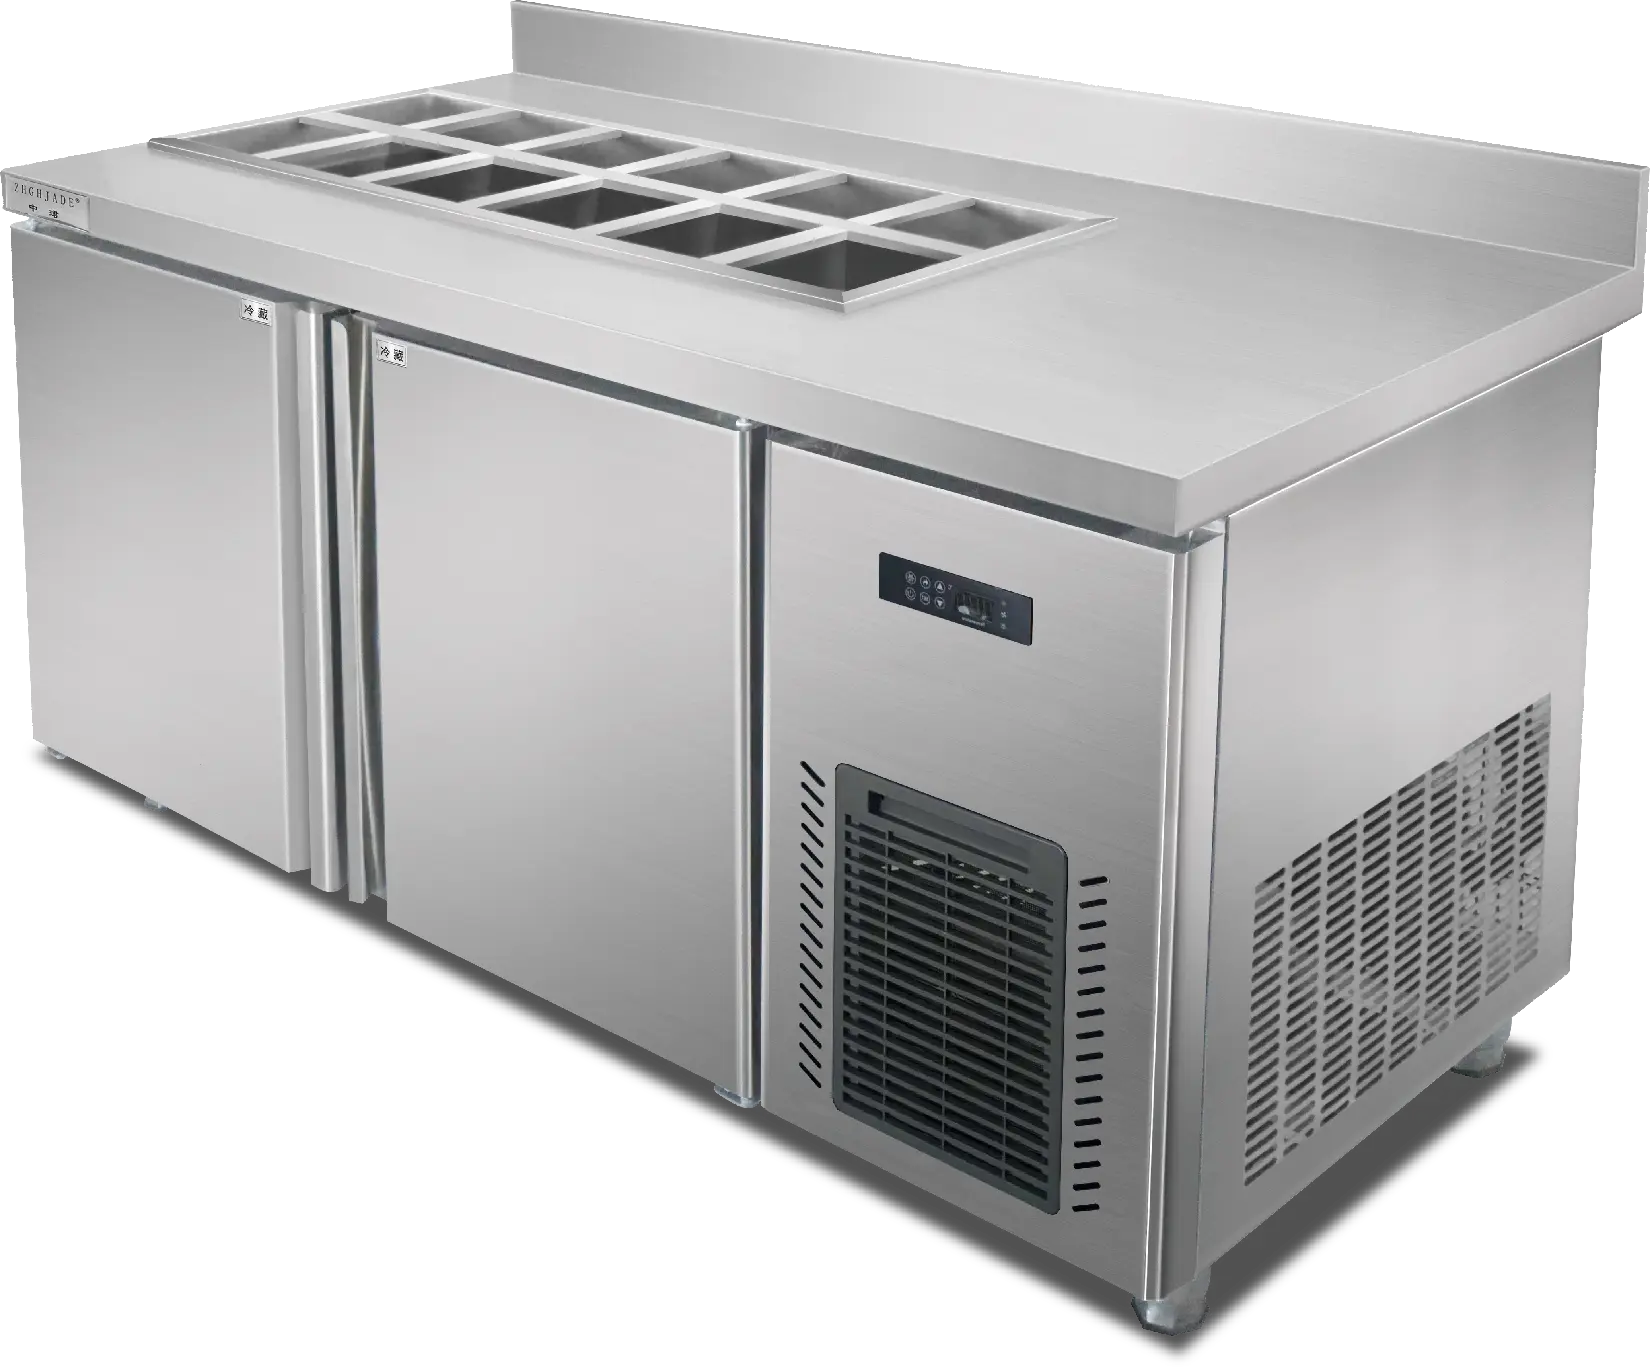 핫 세일 카운터 테이블 냉장고 공장 디스플레이 직접 냉각 냉장고 주방 식품 유지 신선한 작업대 냉장고